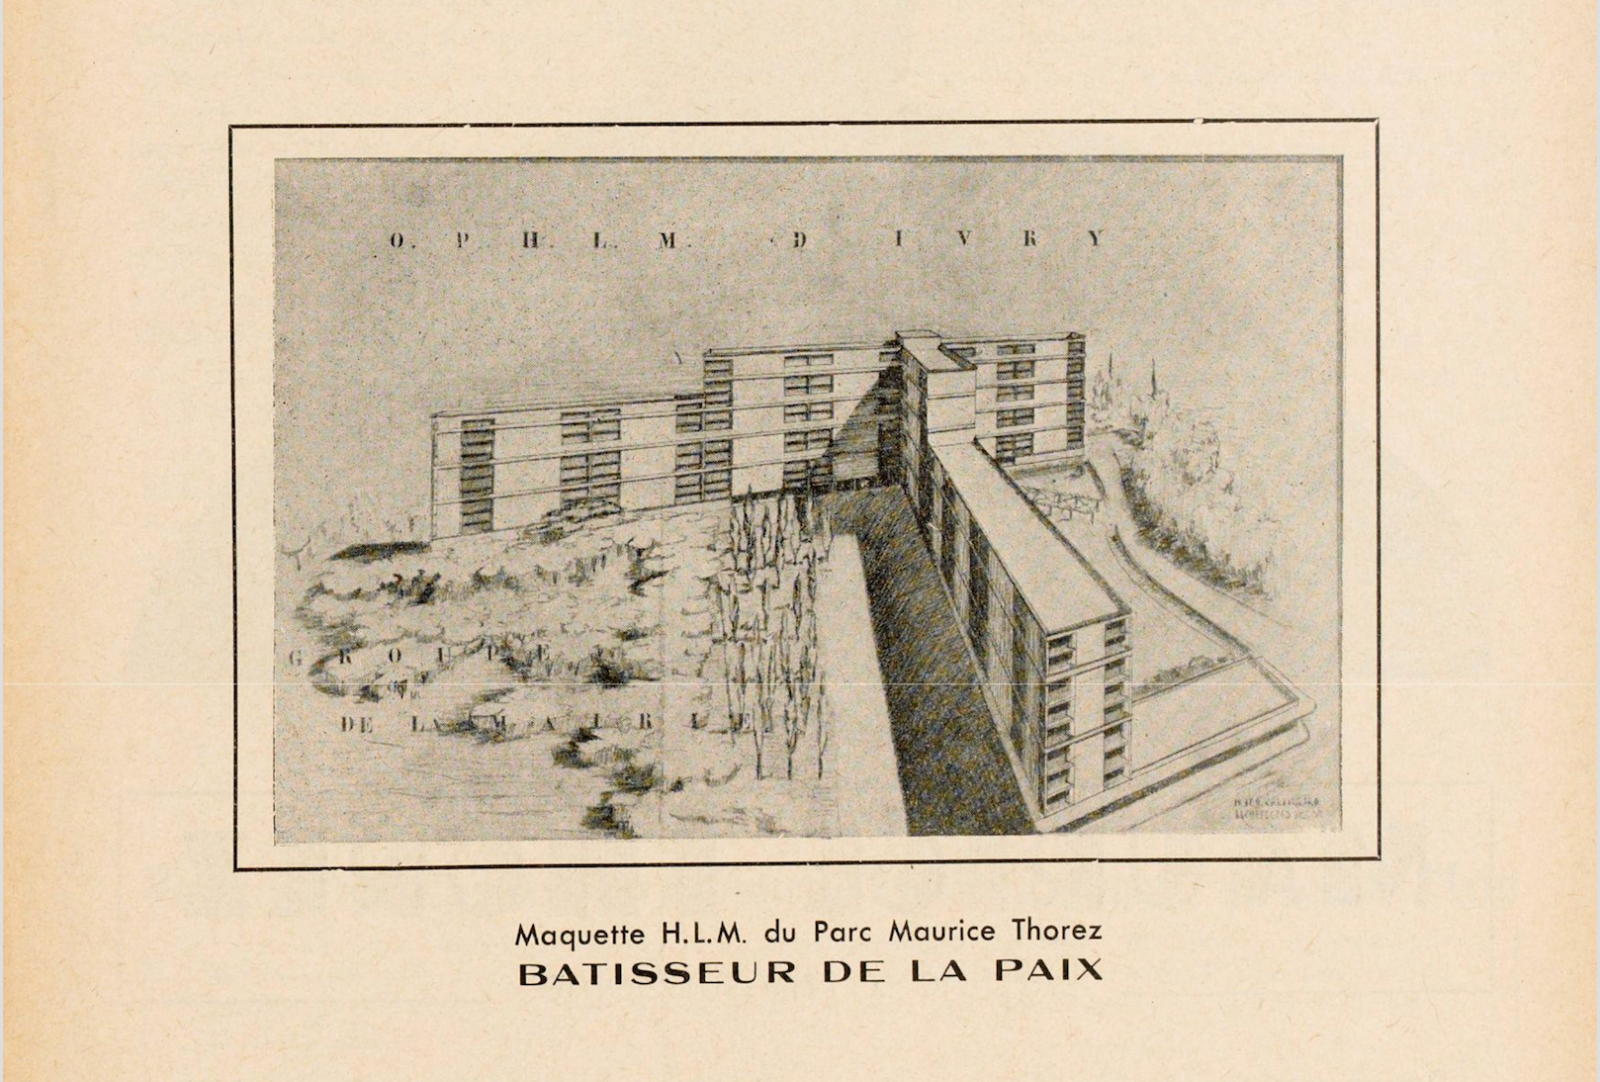 Bulletin municipal d’Ivry, mai 1951 (détail).